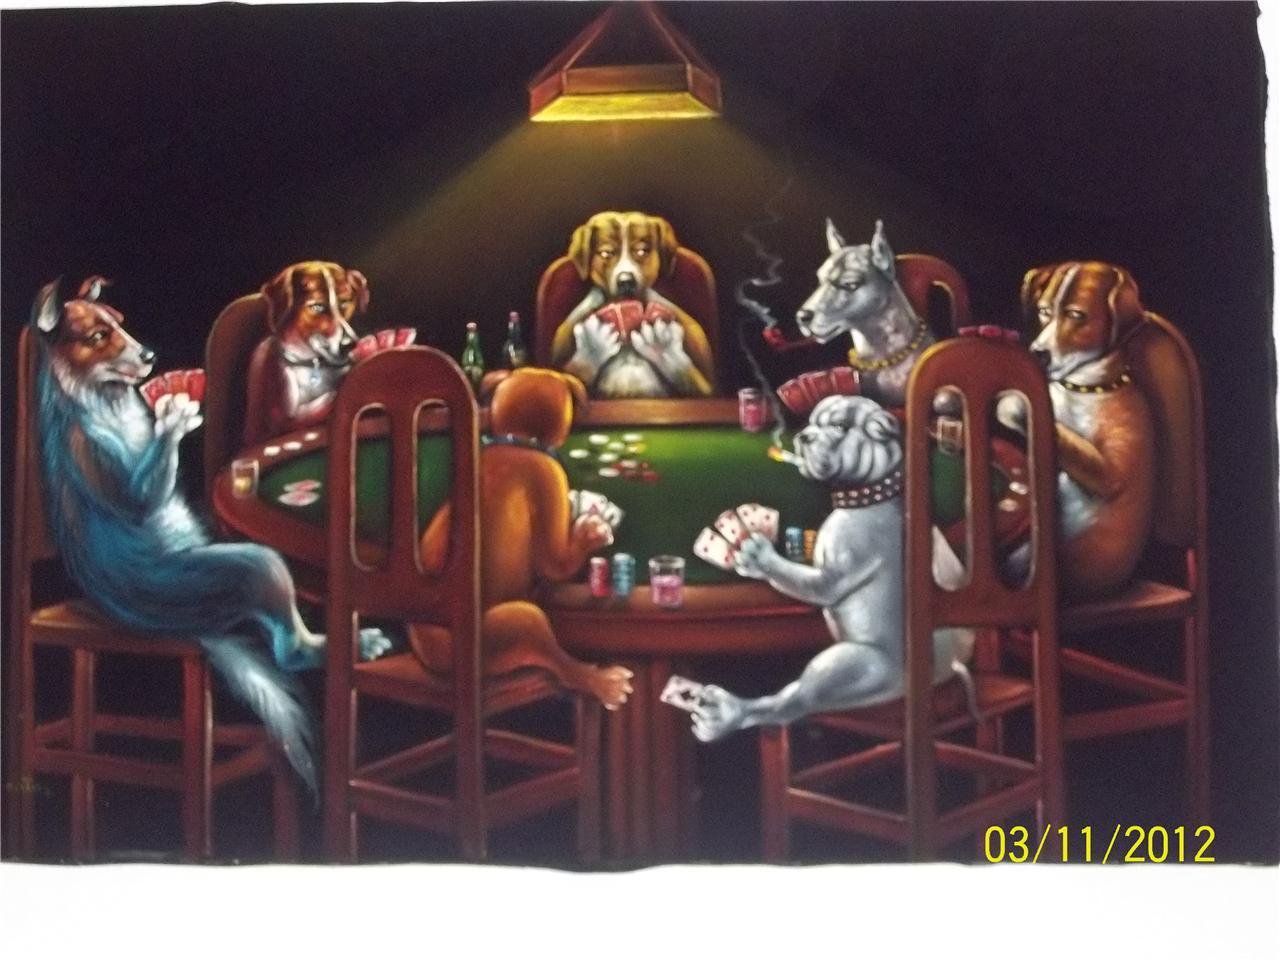 dogs playing poker velvet painting